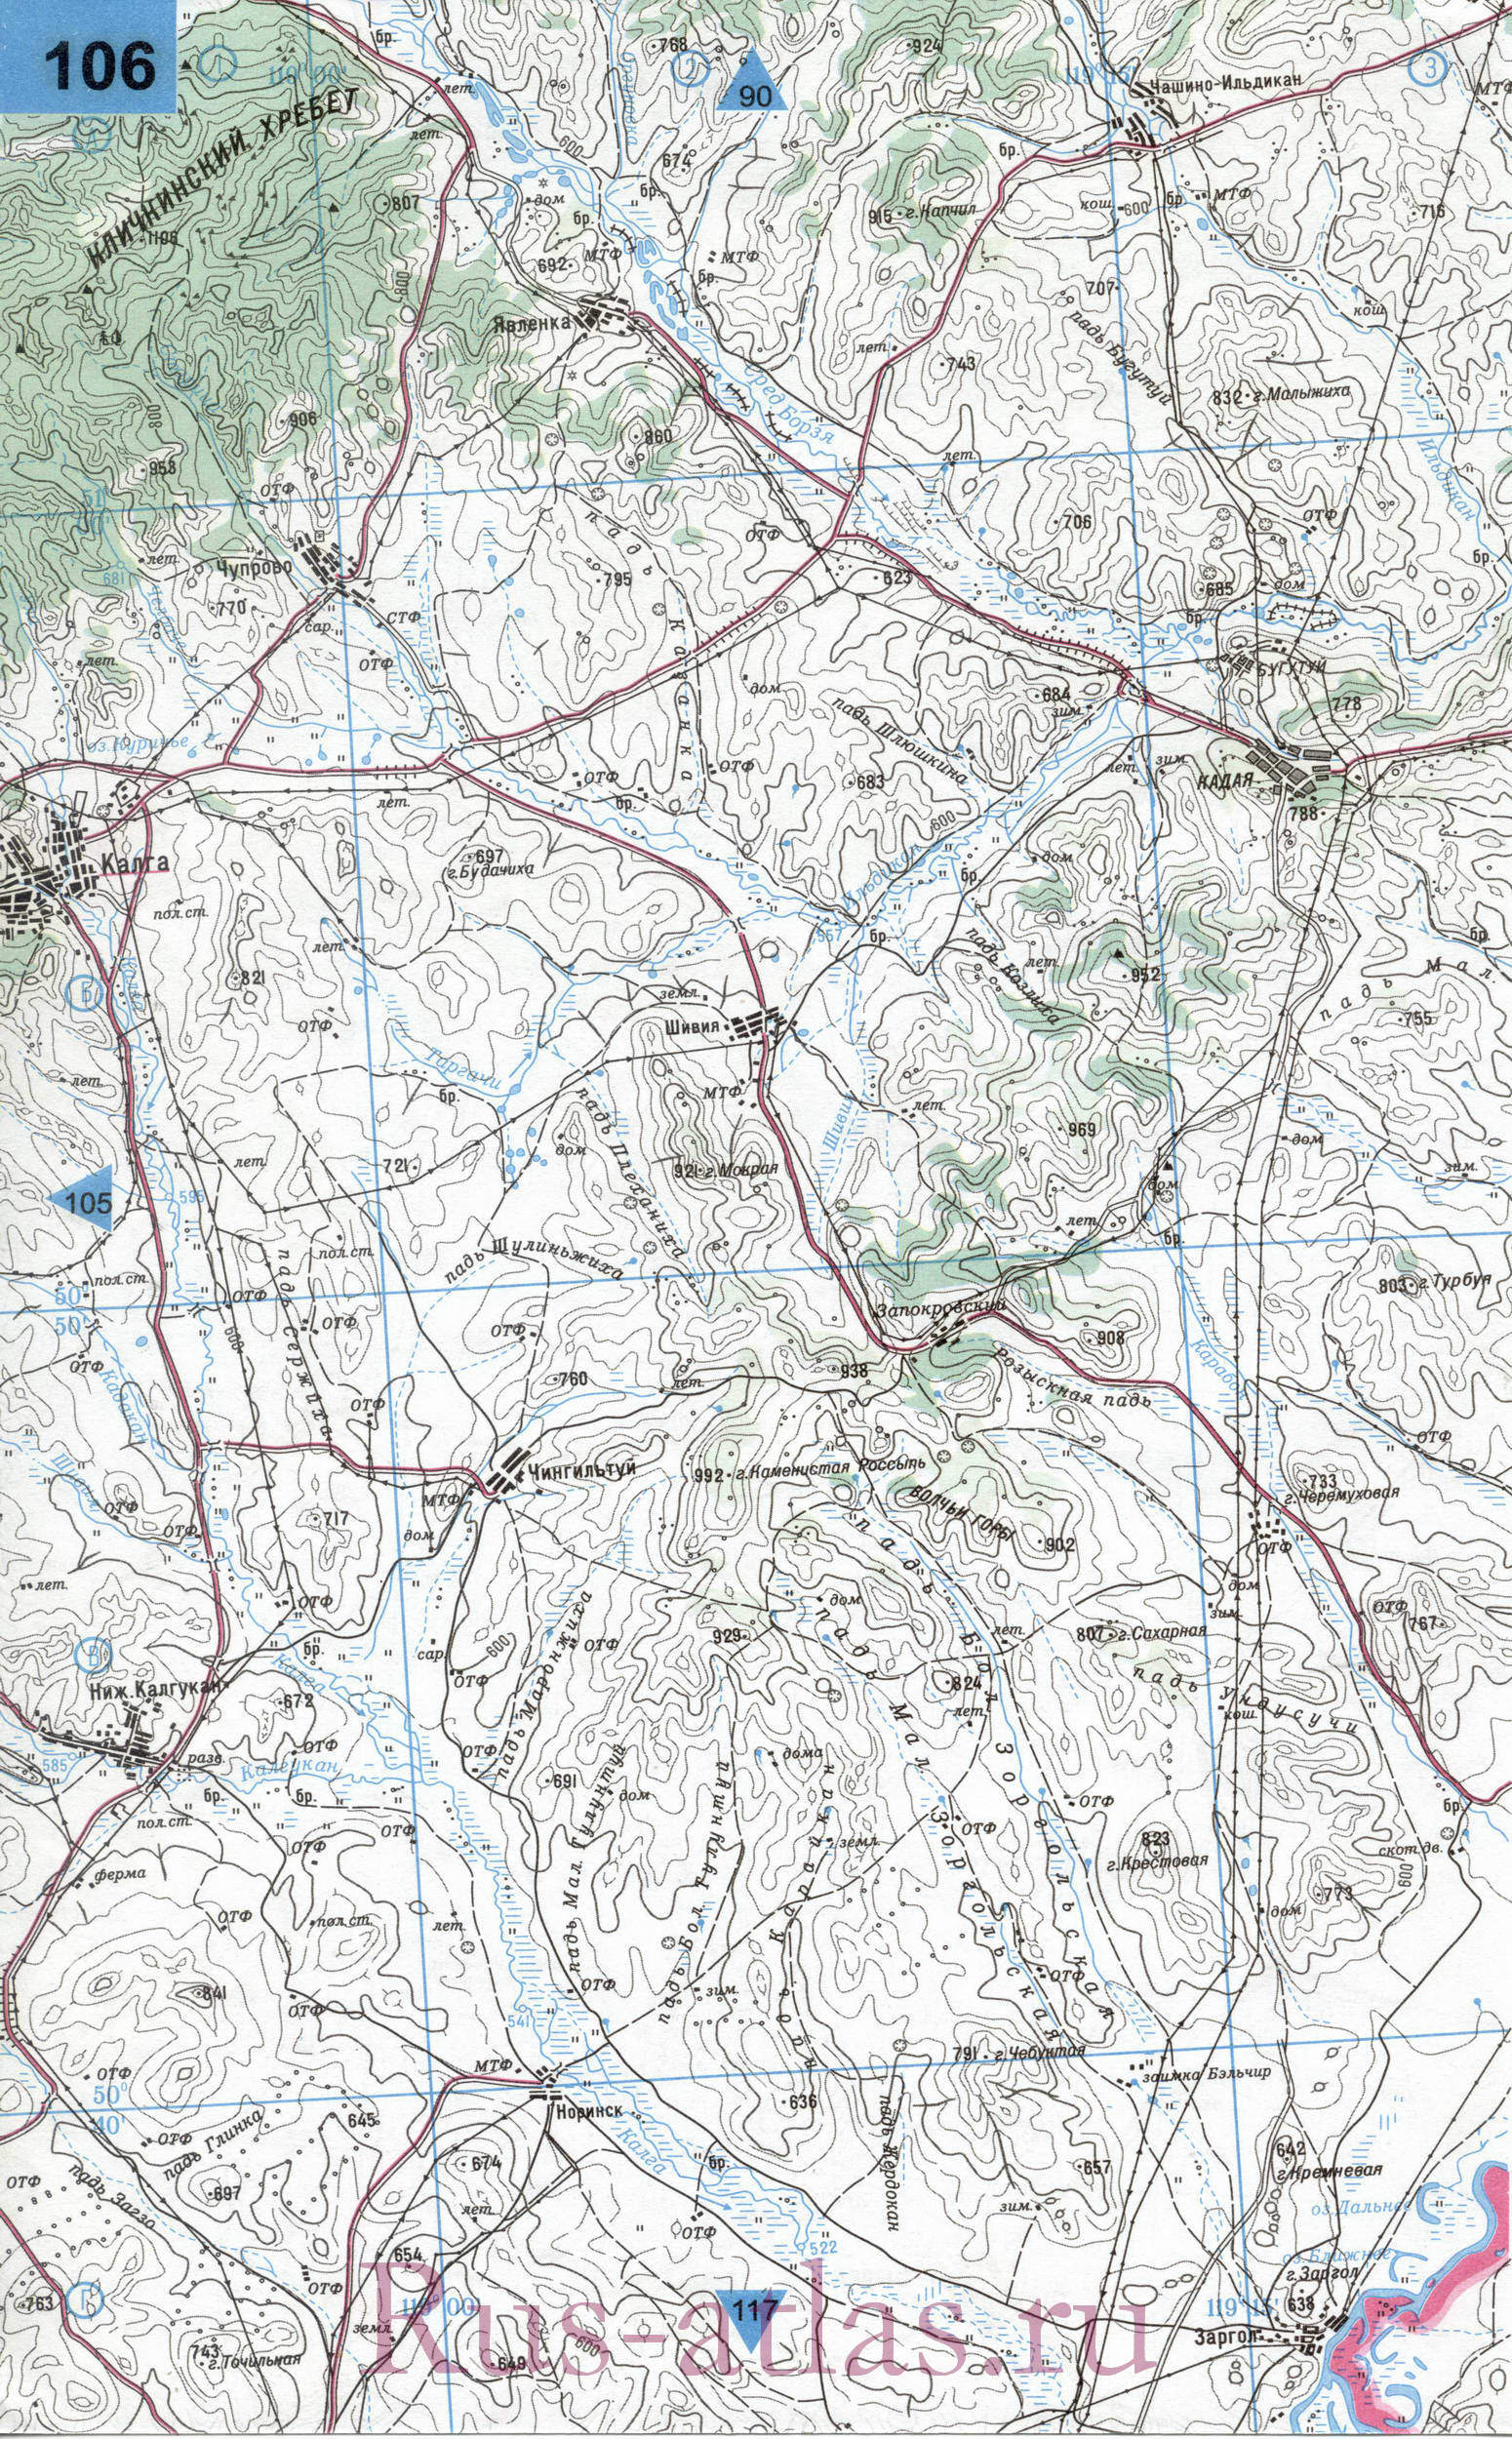 Калганский район Читинской области - карта топографическая масштаба 1см:2км, B0 - 